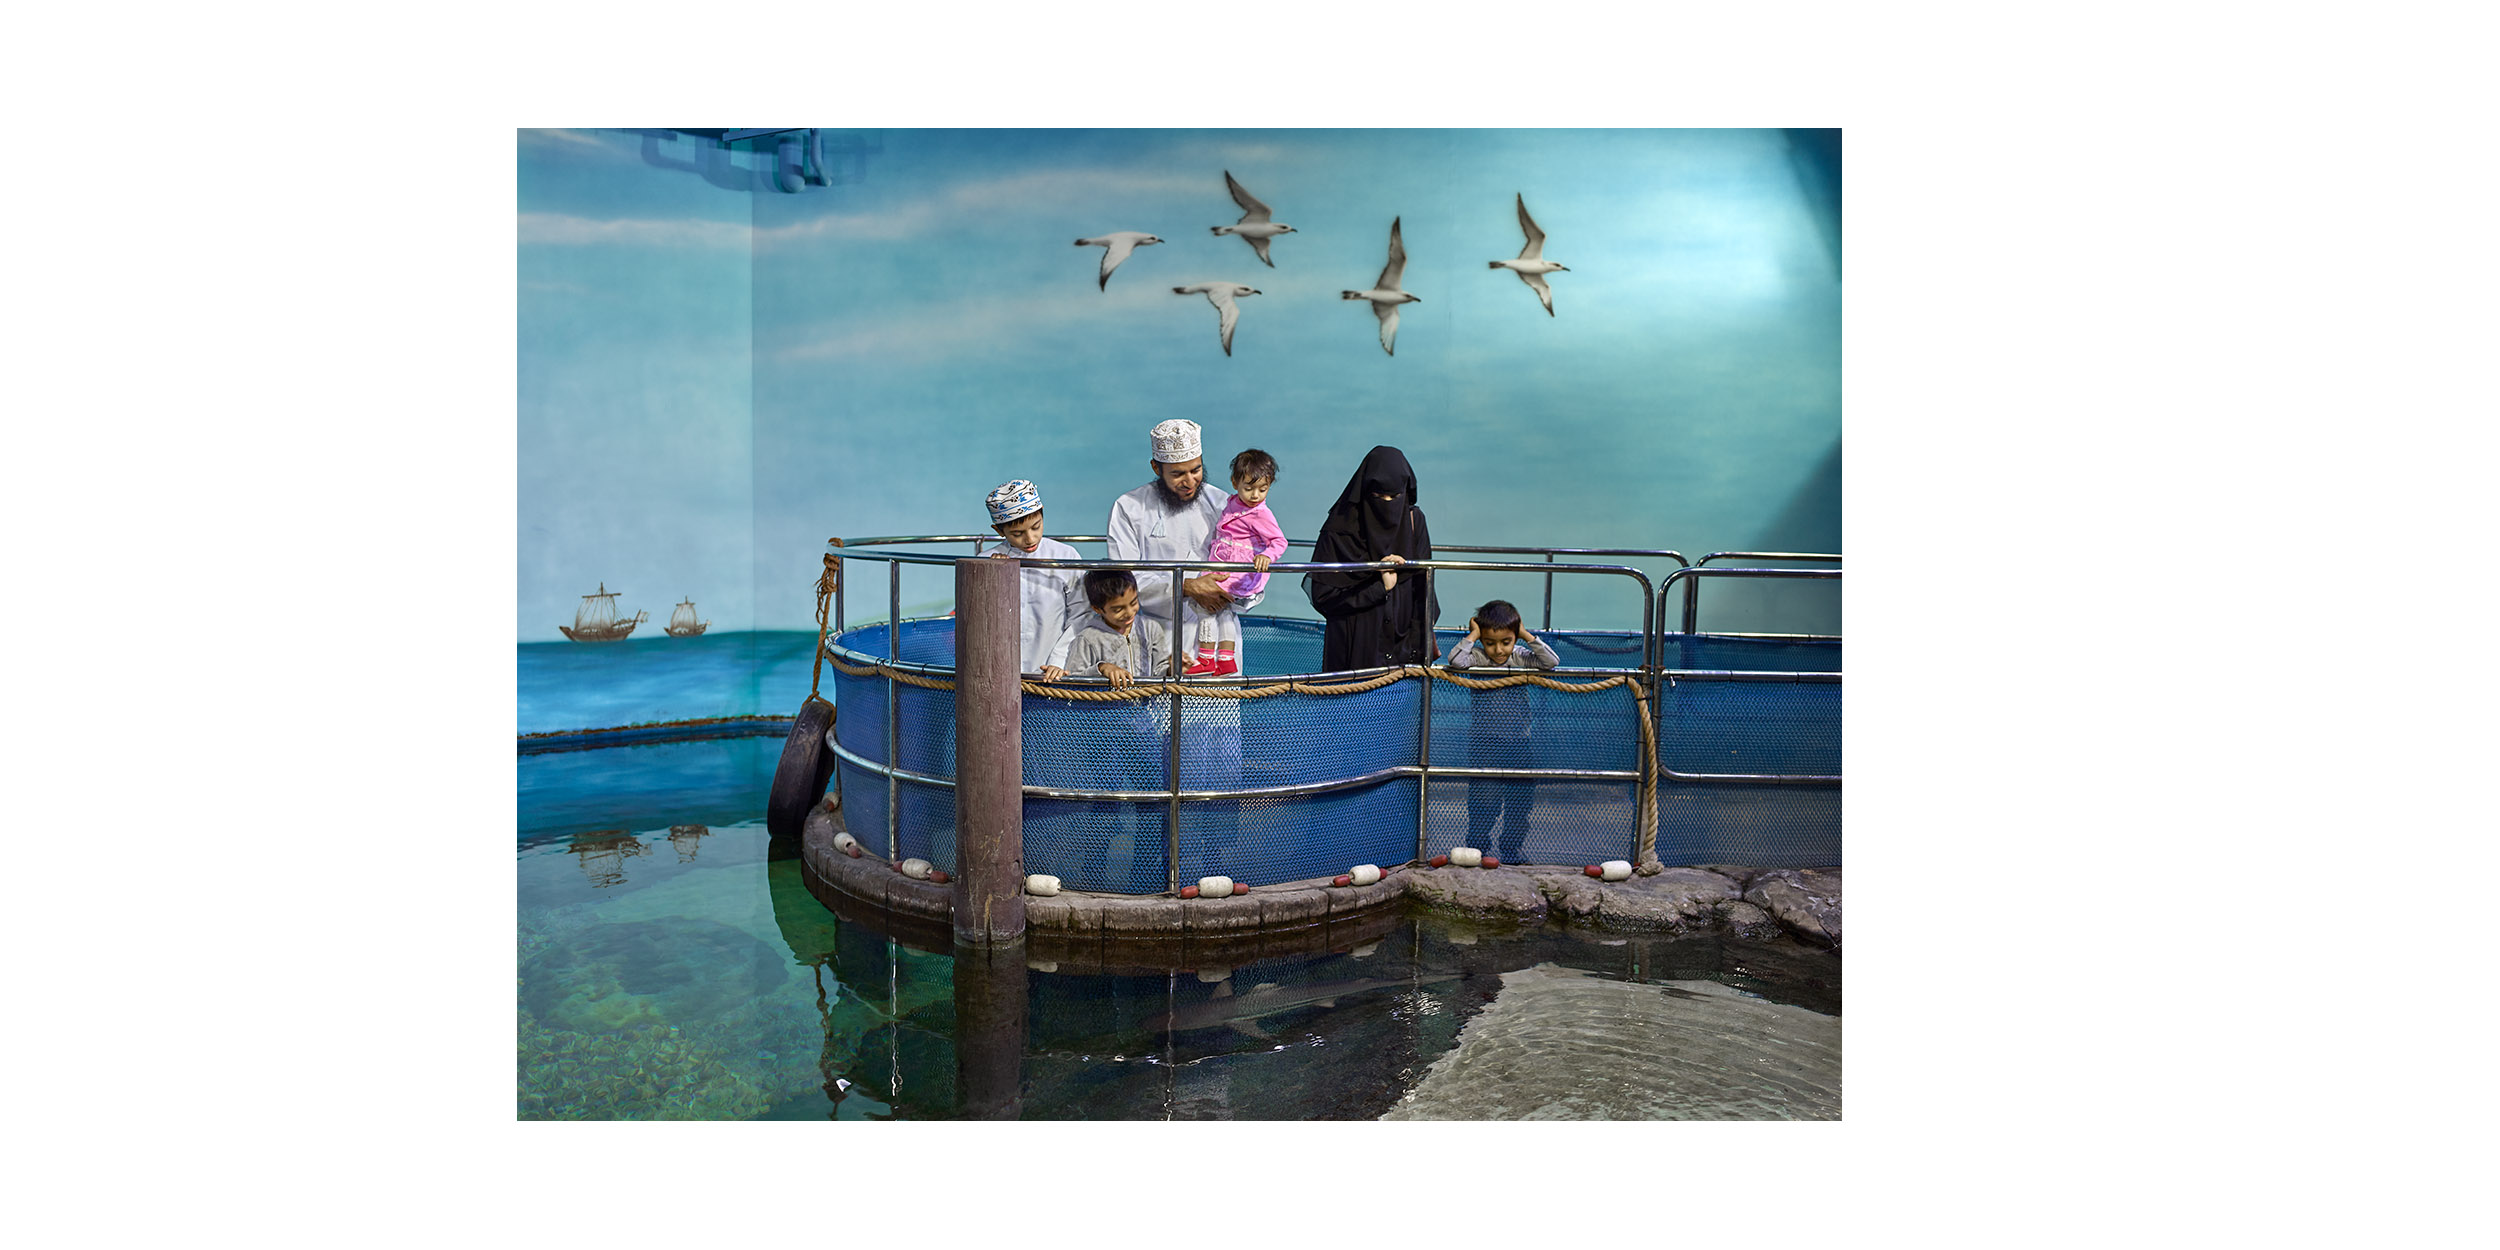  Sharjah Aquarium, Al Khan, Sharjah 